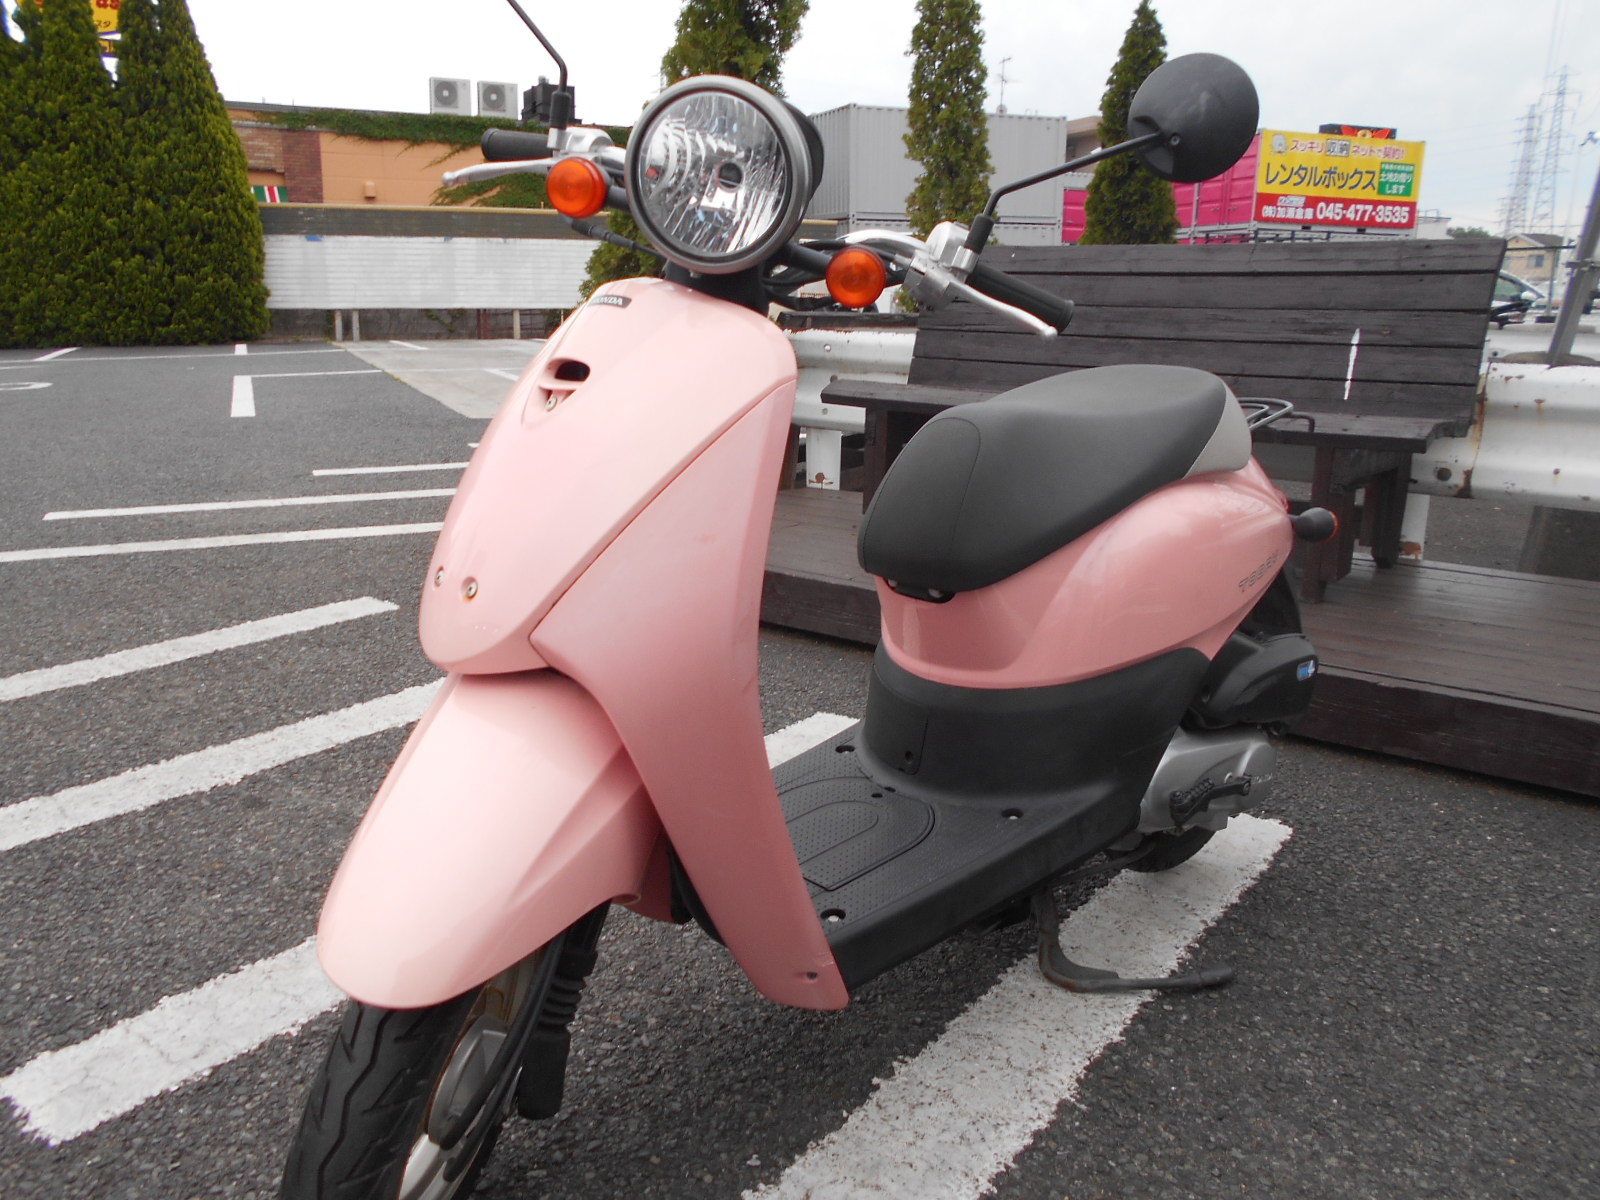 ピンクな原付 最新情報 U Media ユーメディア 中古バイク 新車 バイク探しの決定版 神奈川 東京でバイク探すならユーメディア